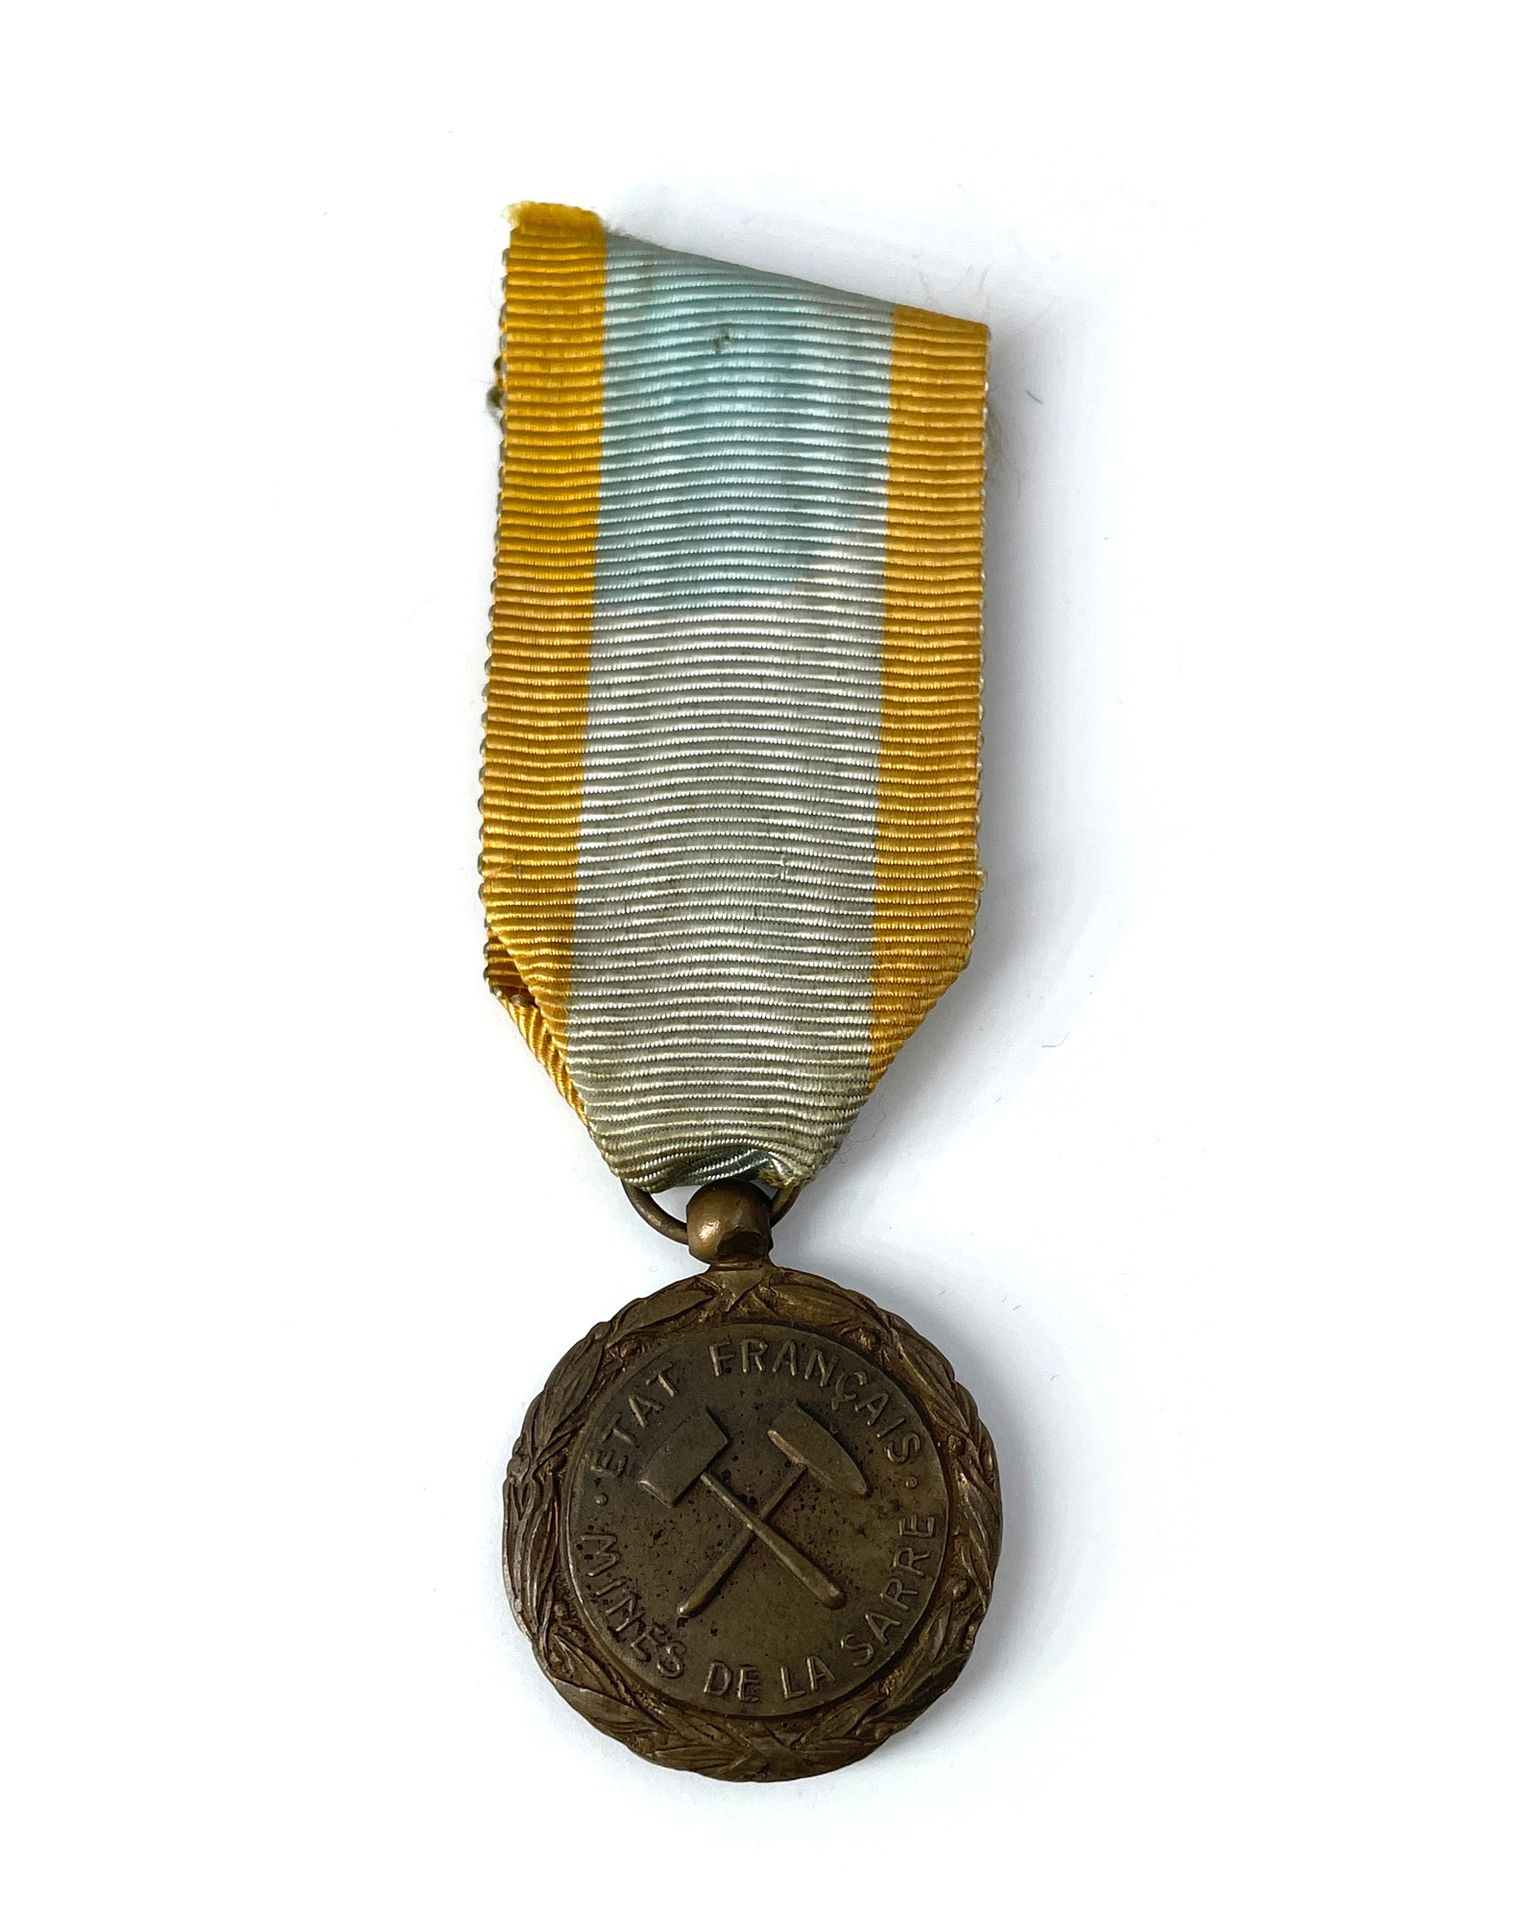 Null FRANCIA Medalla minera del Sarre.
En bronce. Cinta.
30 mm.